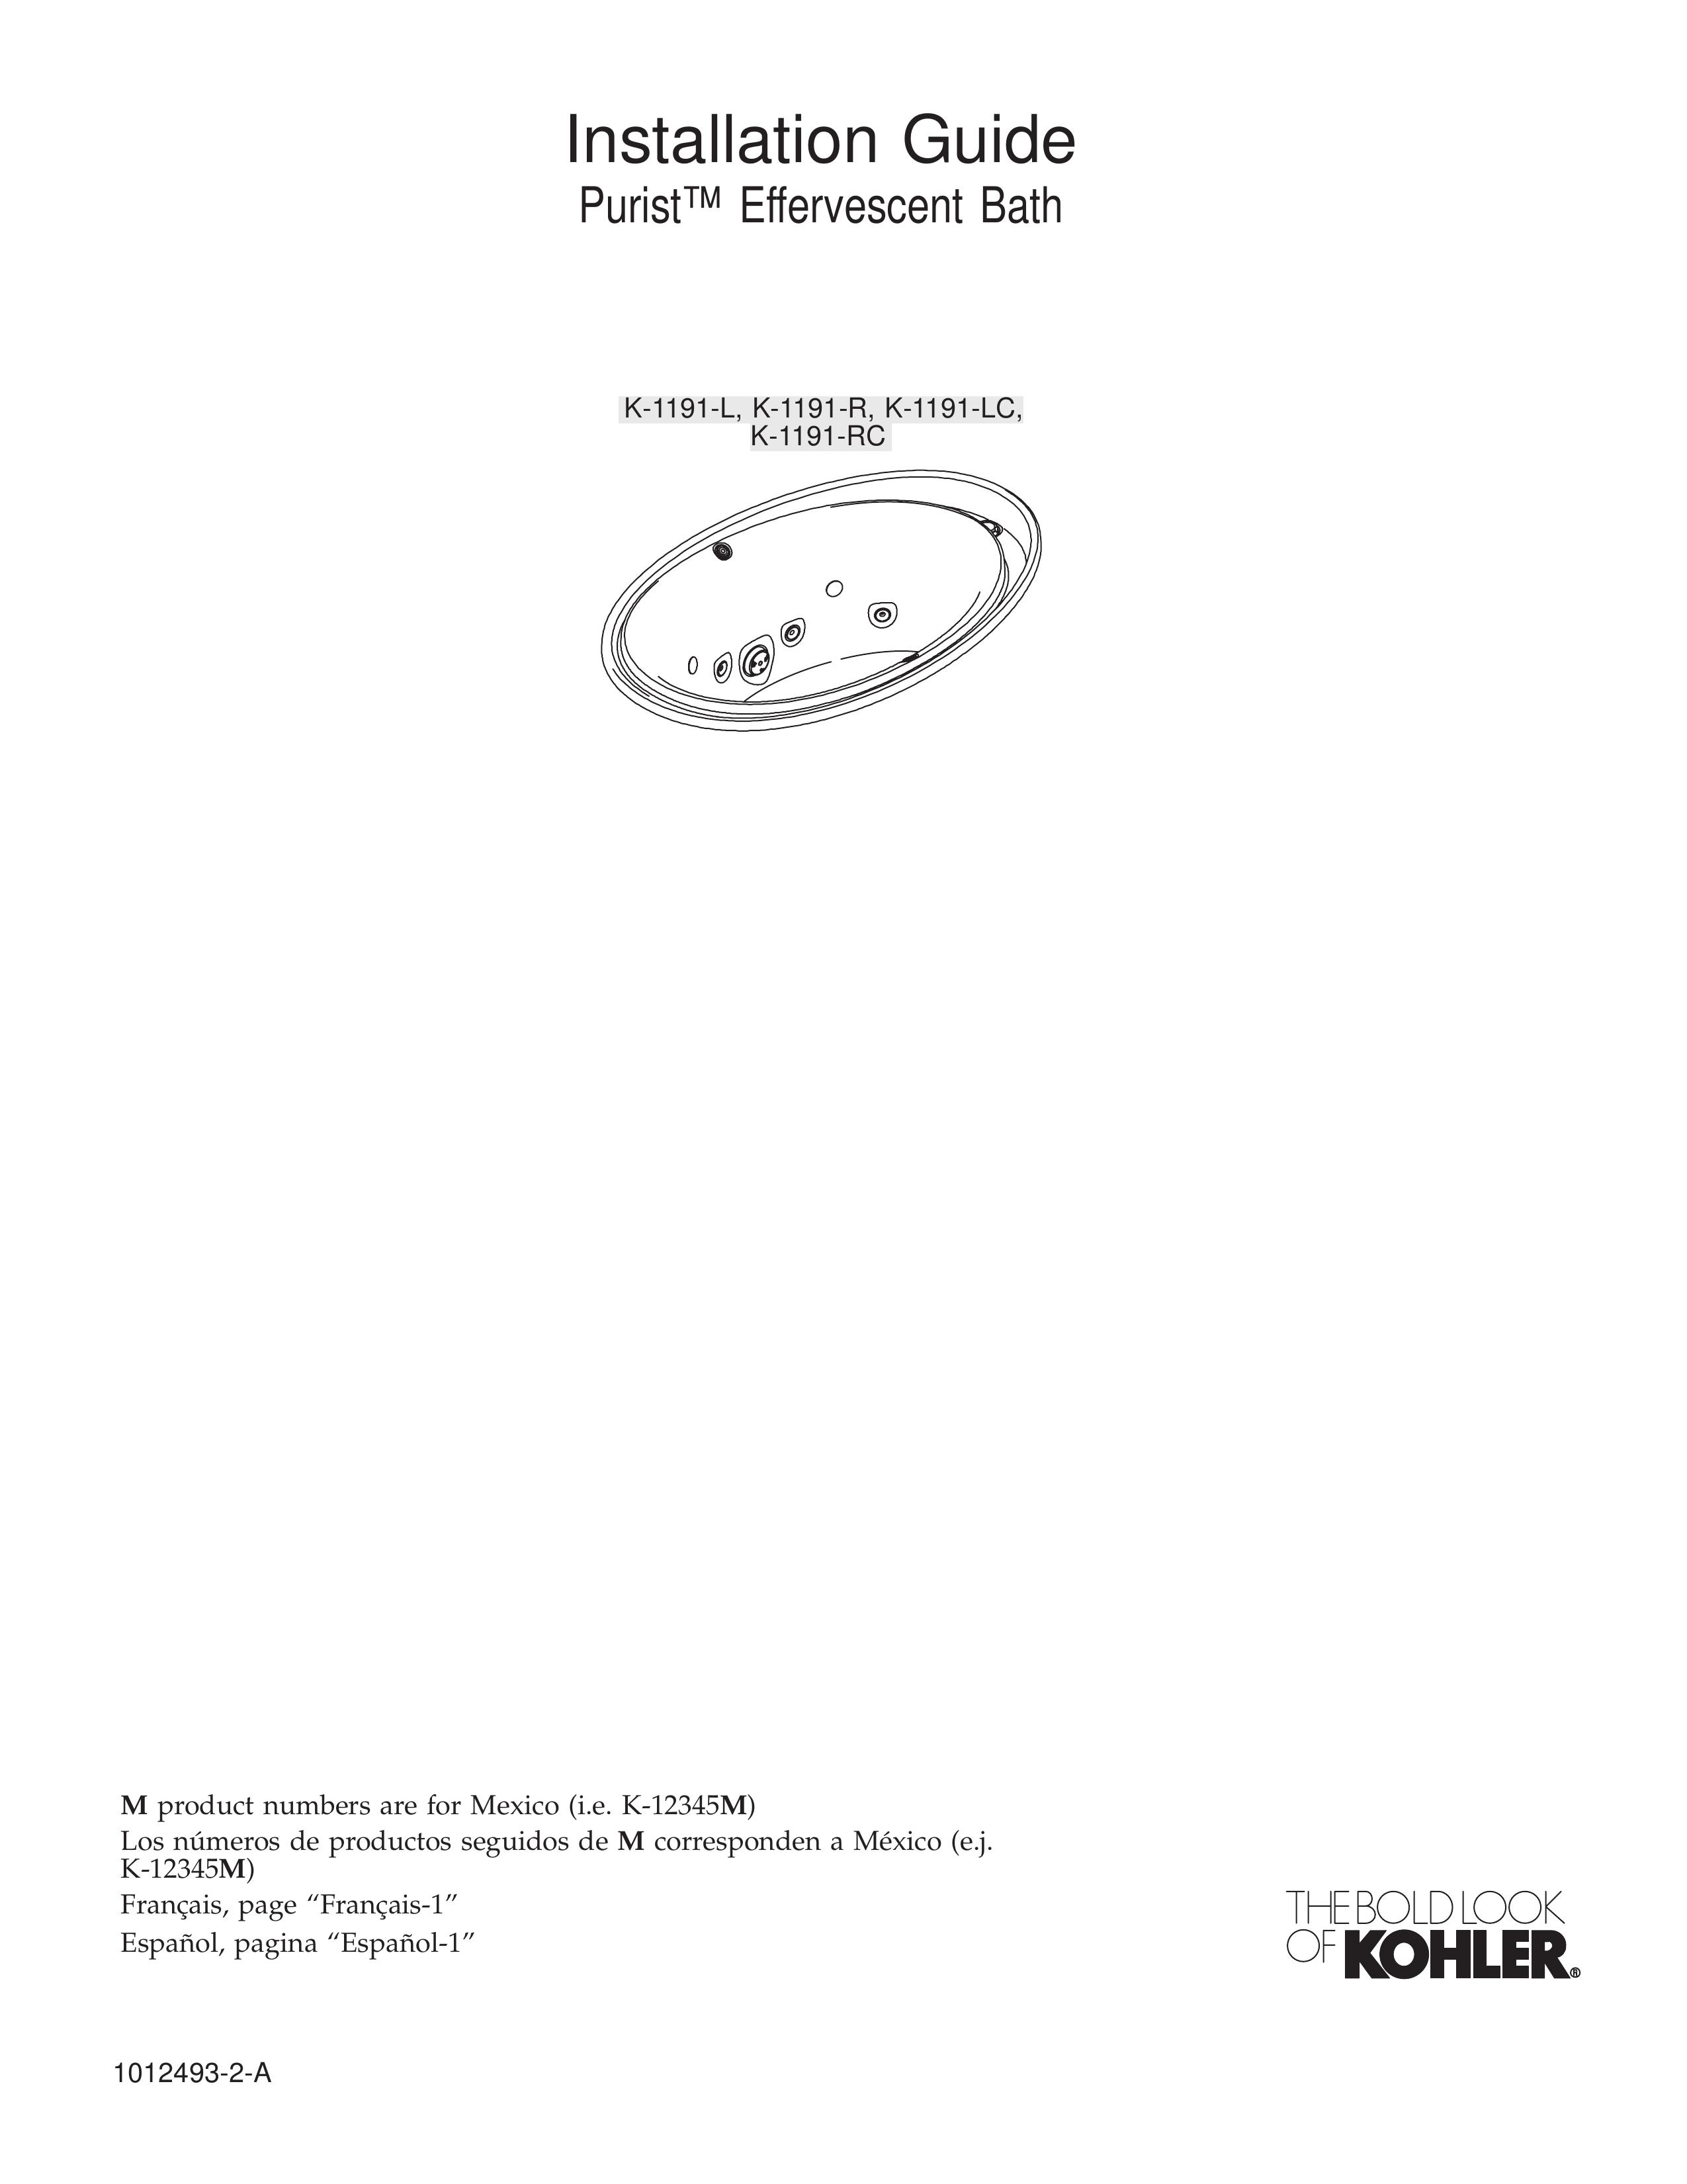 Kohler K1191-L Bathroom Aids User Manual